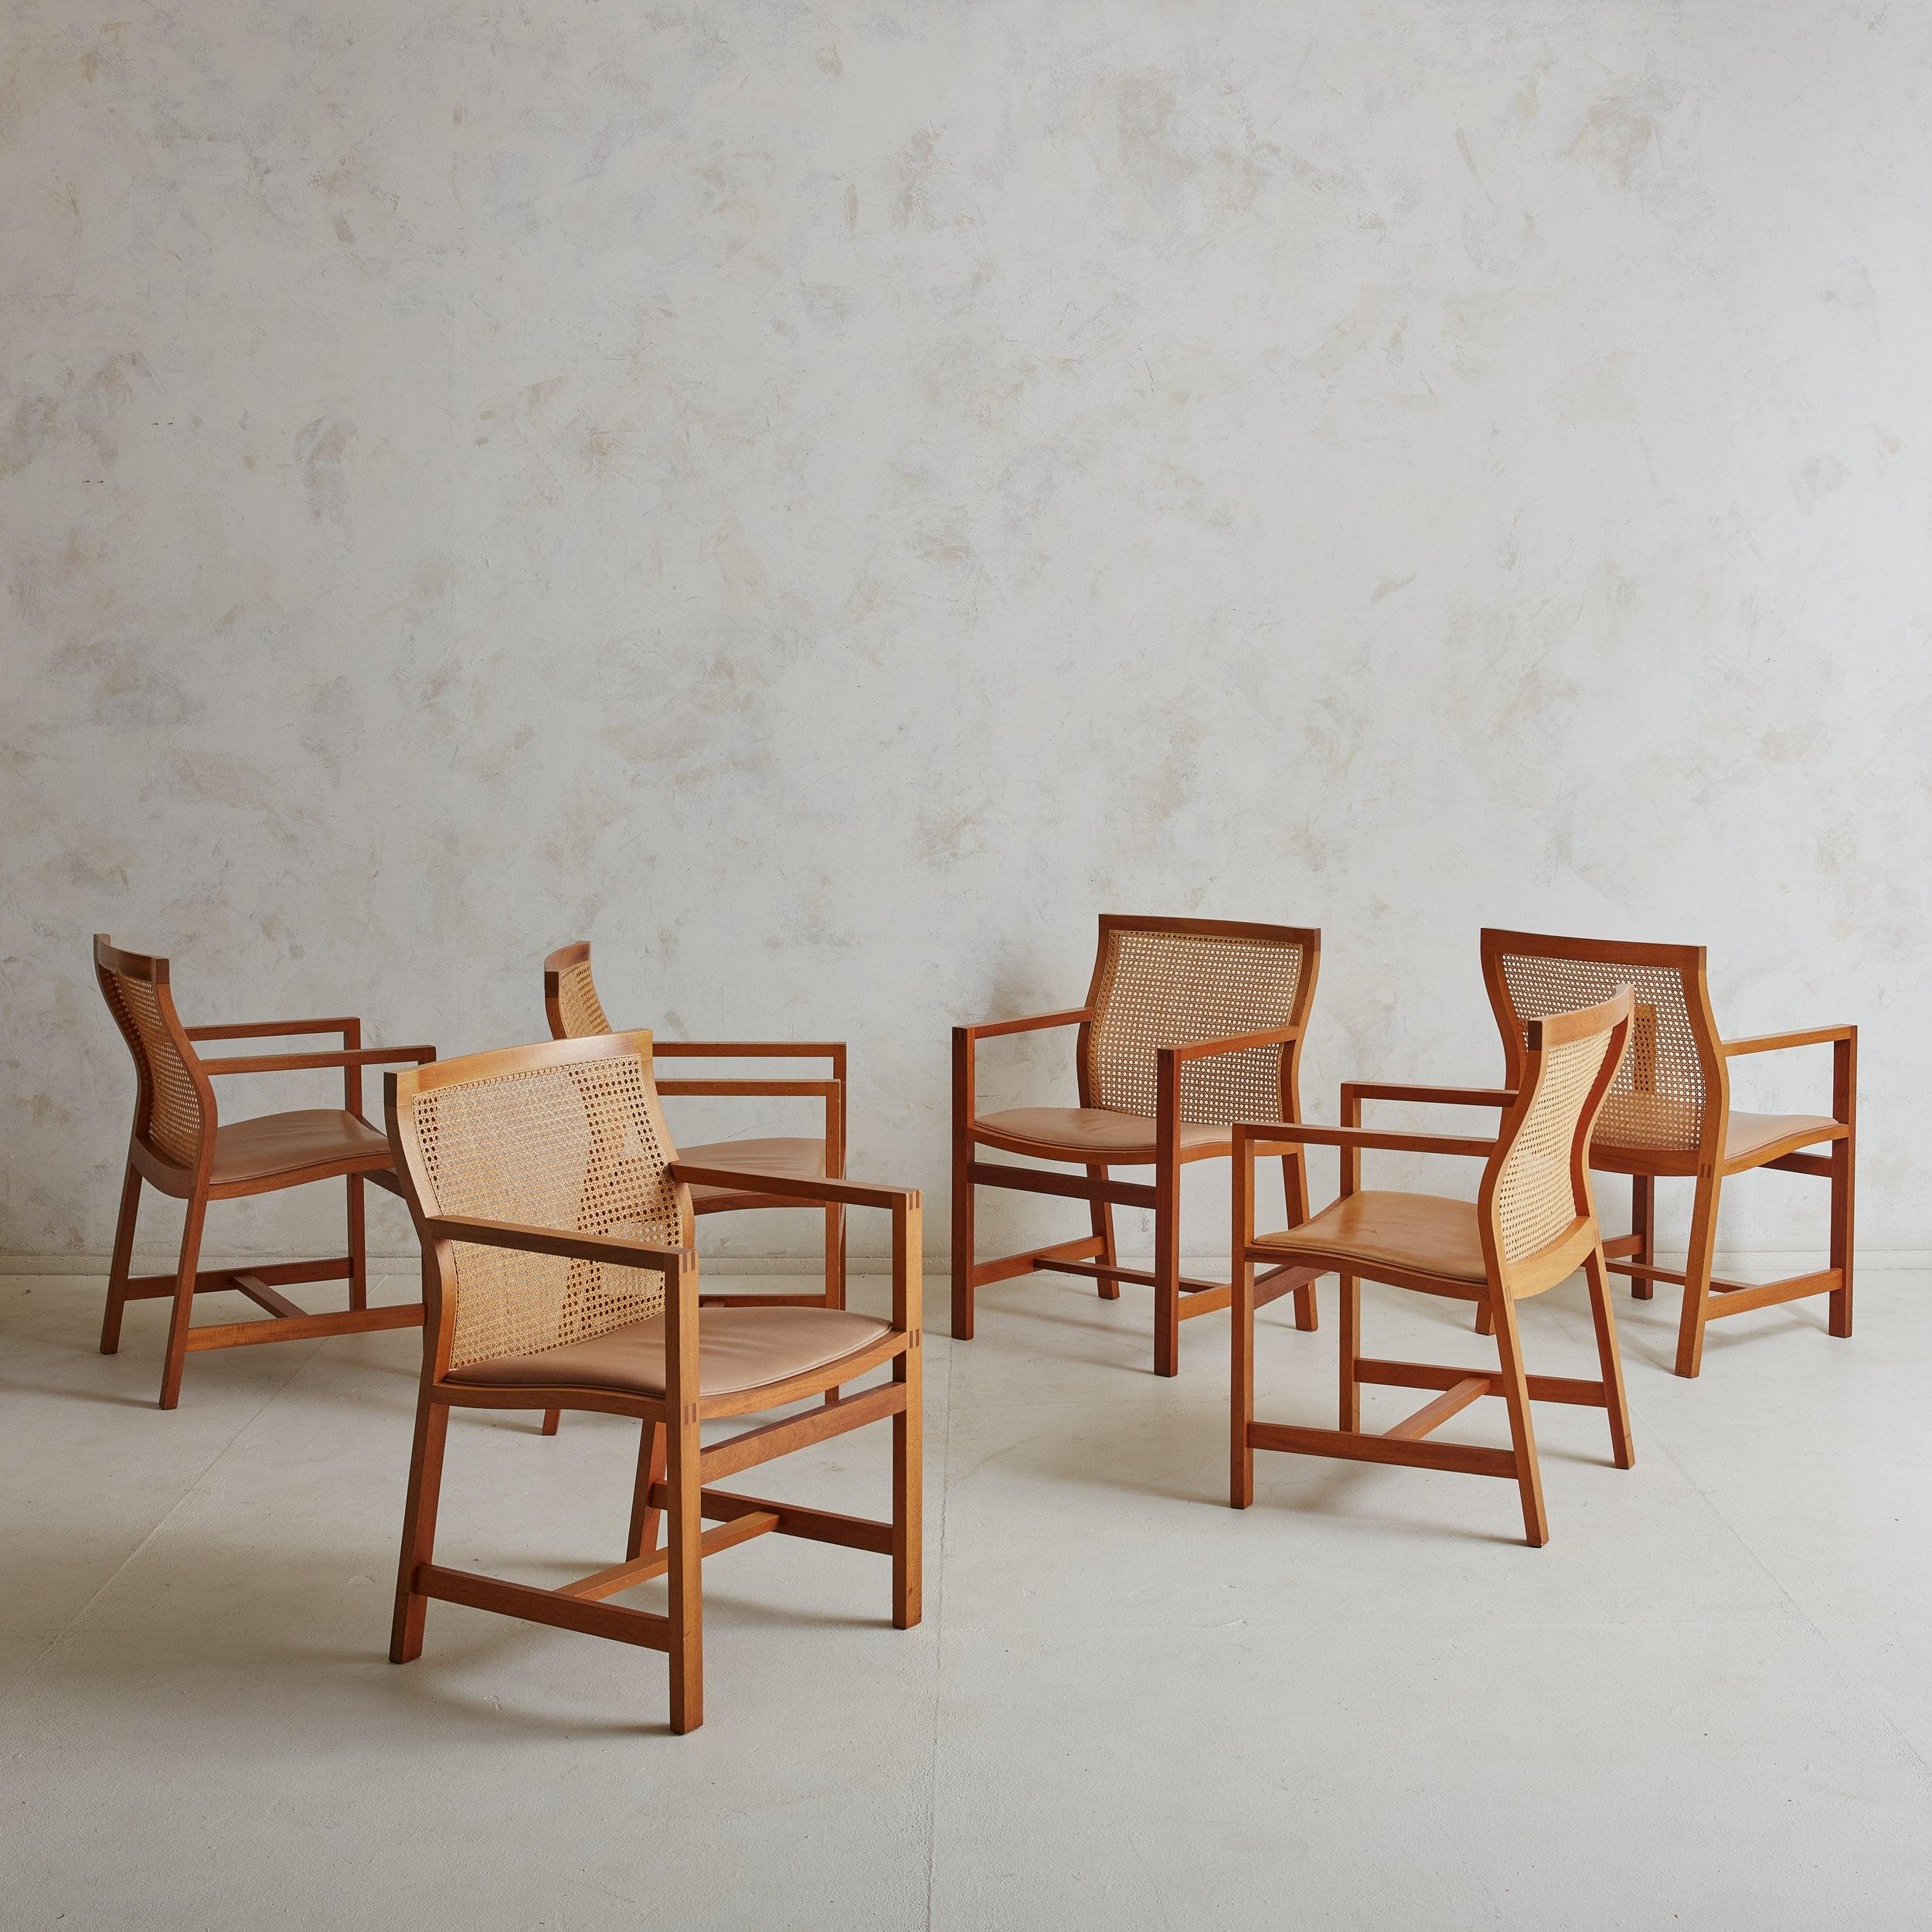 6 dänische moderne Esszimmerstühle aus Schilfrohr und Kirschholz, entworfen von Rud Thygesen und Johnny Sorensen für Botium in den 1980er Jahren. Diese außergewöhnlich gearbeiteten Esszimmerstühle bestehen aus minimalistischen Kirschholzrahmen,